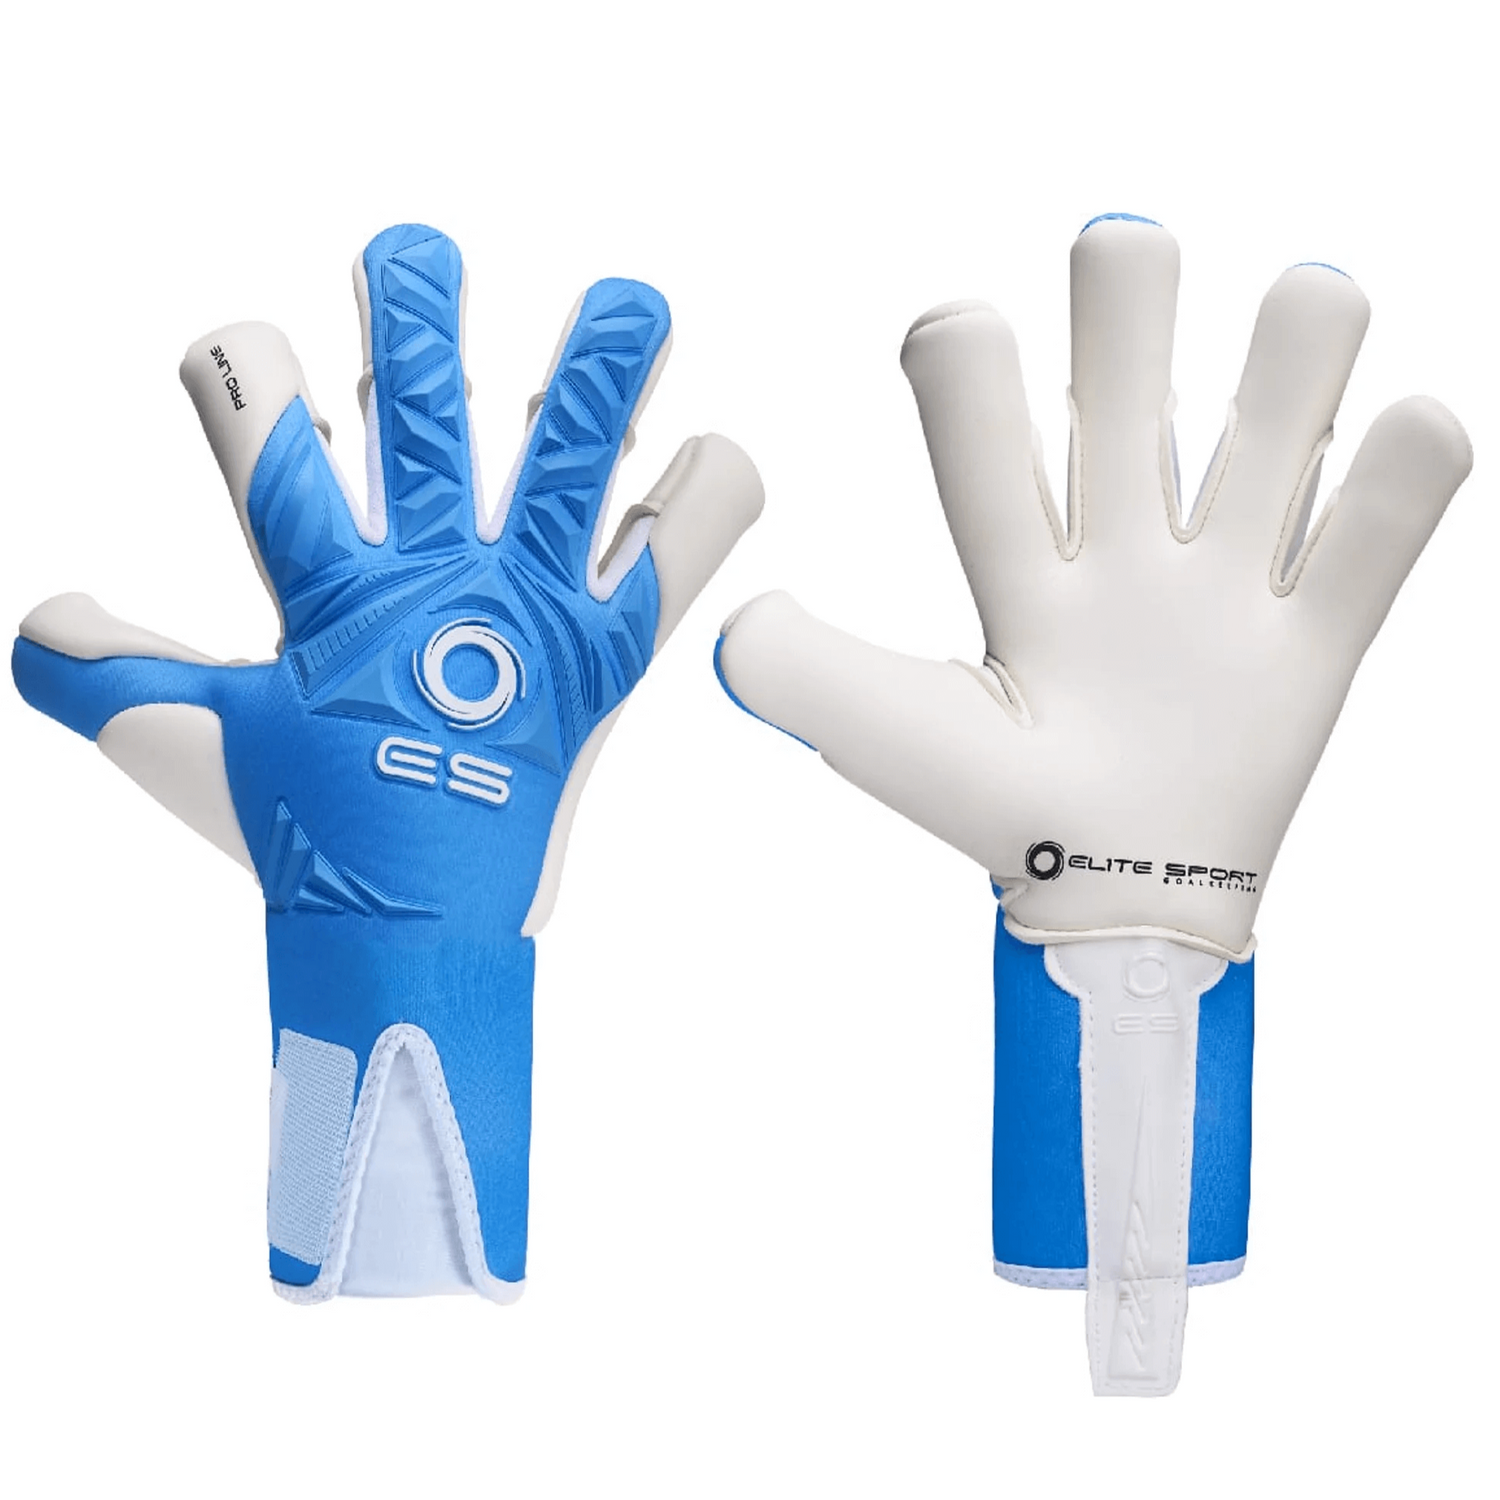 Elite Sport Neo Revolution Blue Goalkeeper Gloves - Blue-White (Pair)